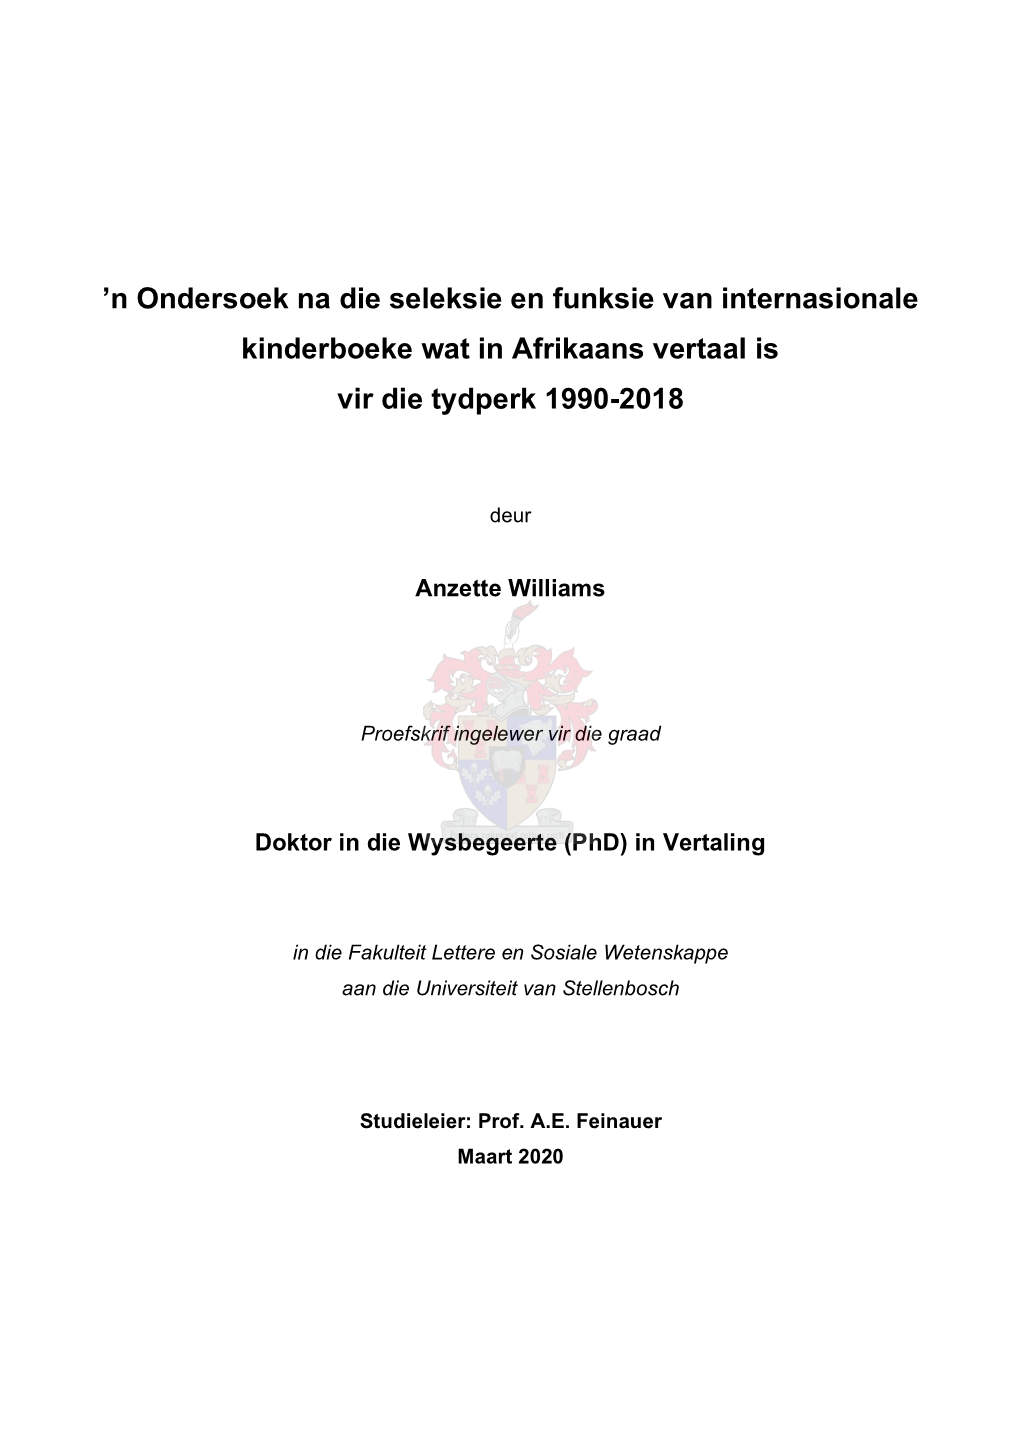 N Ondersoek Na Die Seleksie En Funksie Van Internasionale Kinderboeke Wat in Afrikaans Vertaal Is Vir Die Tydperk 1990-2018